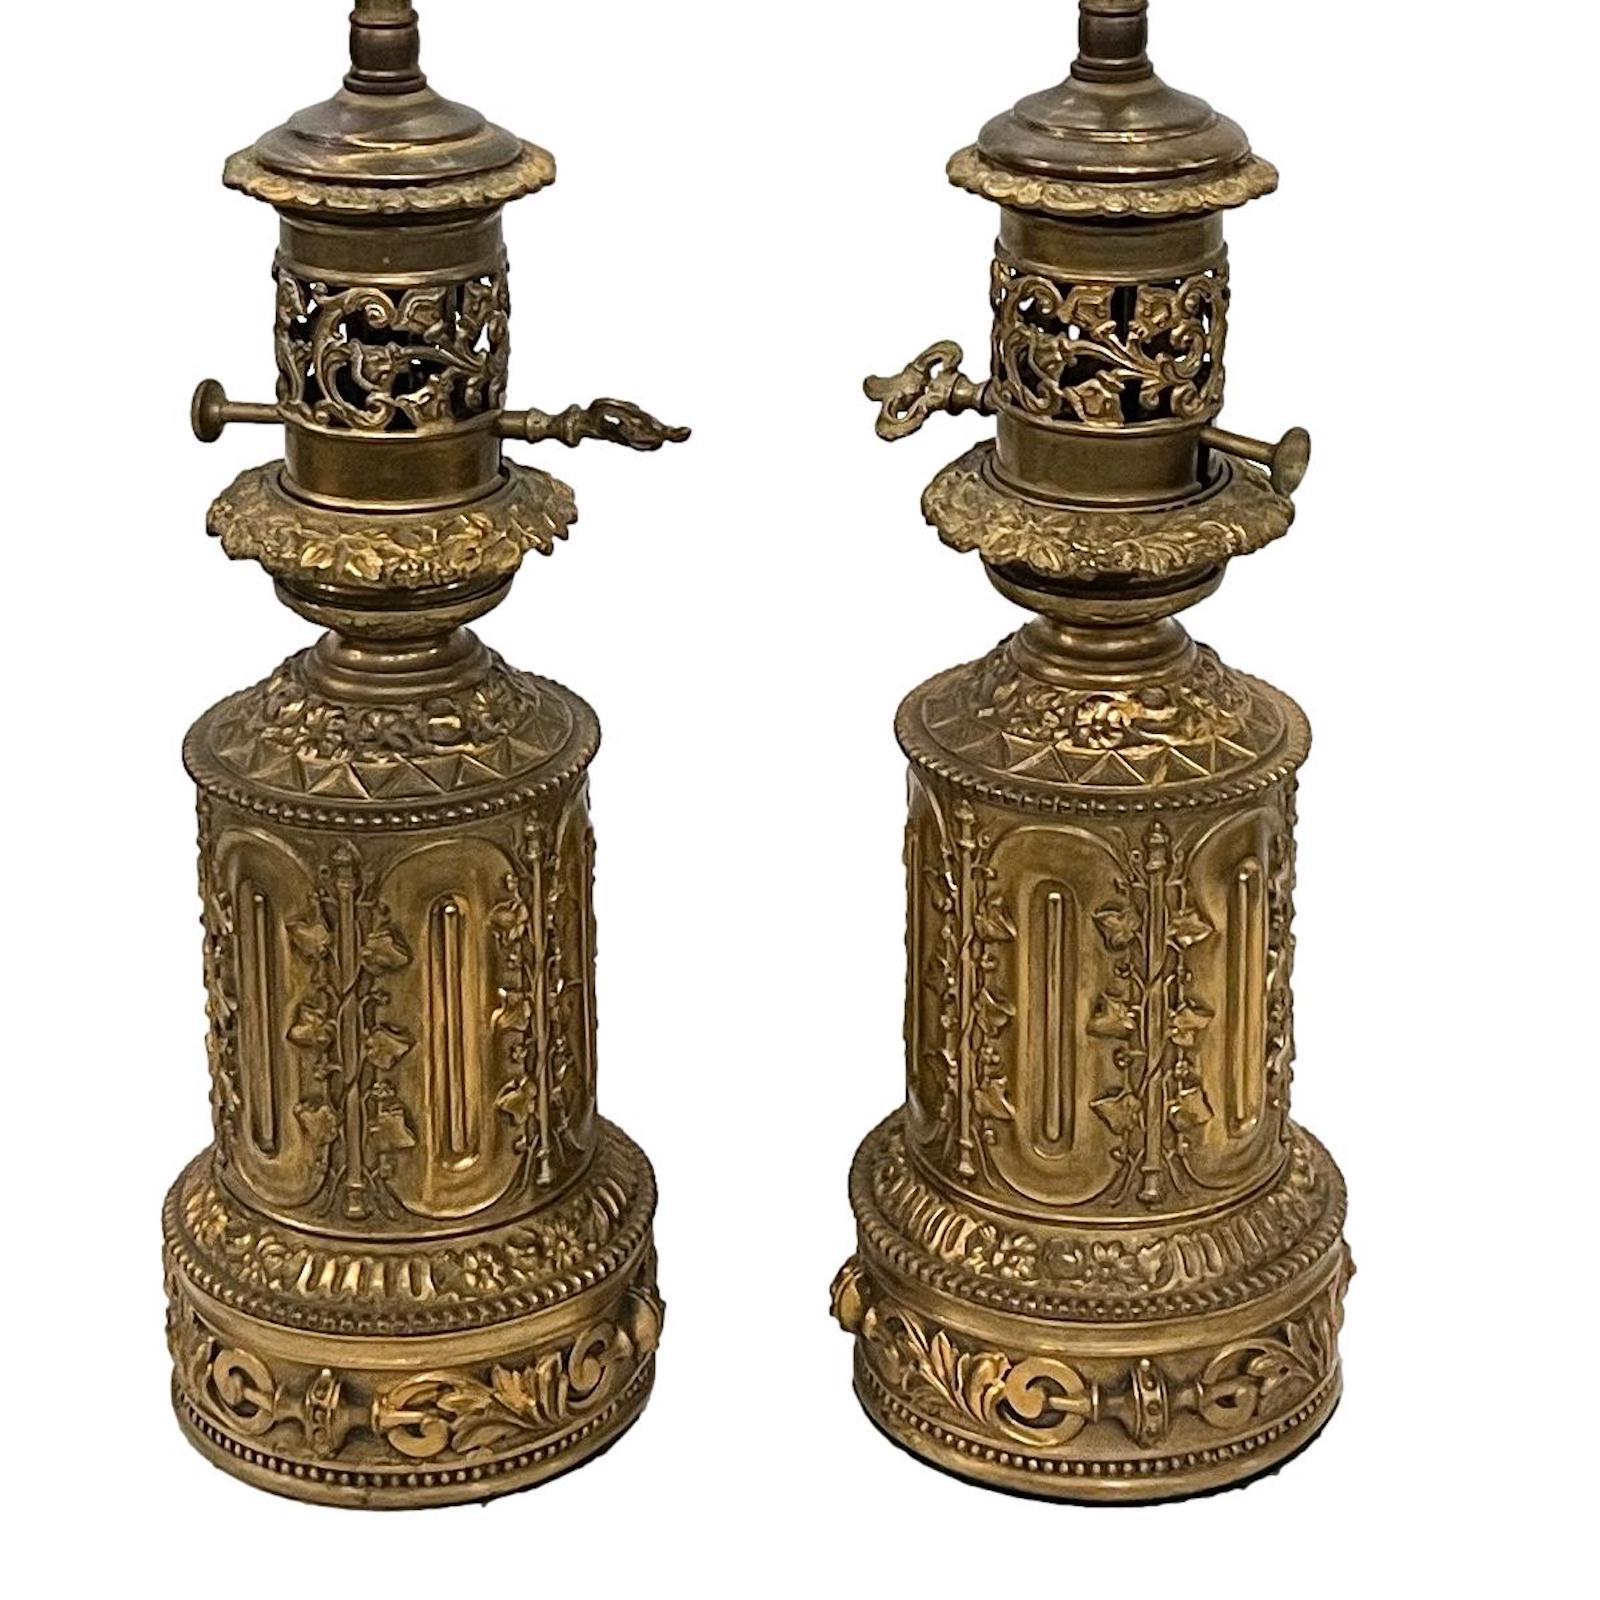 Ein Paar französische Öllampen um 1910 mit Efeu auf Säulen und Details auf dem Sockel, elektrifiziert.

Abmessungen:
Höhe des Körpers: 13